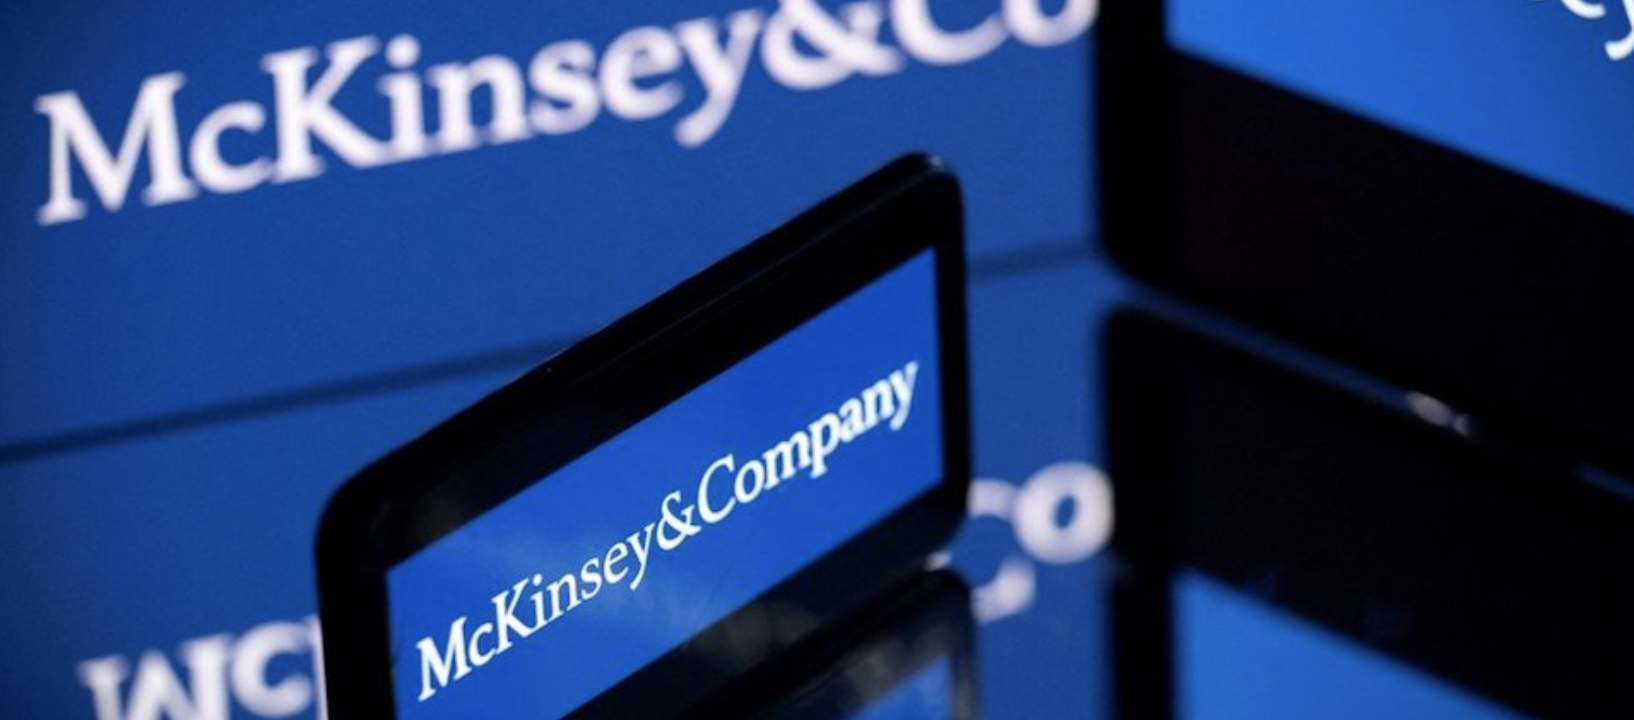 Affaire McKinsey : le bureau du Sénat saisit le parquet pour "suspicion de faux témoignage"